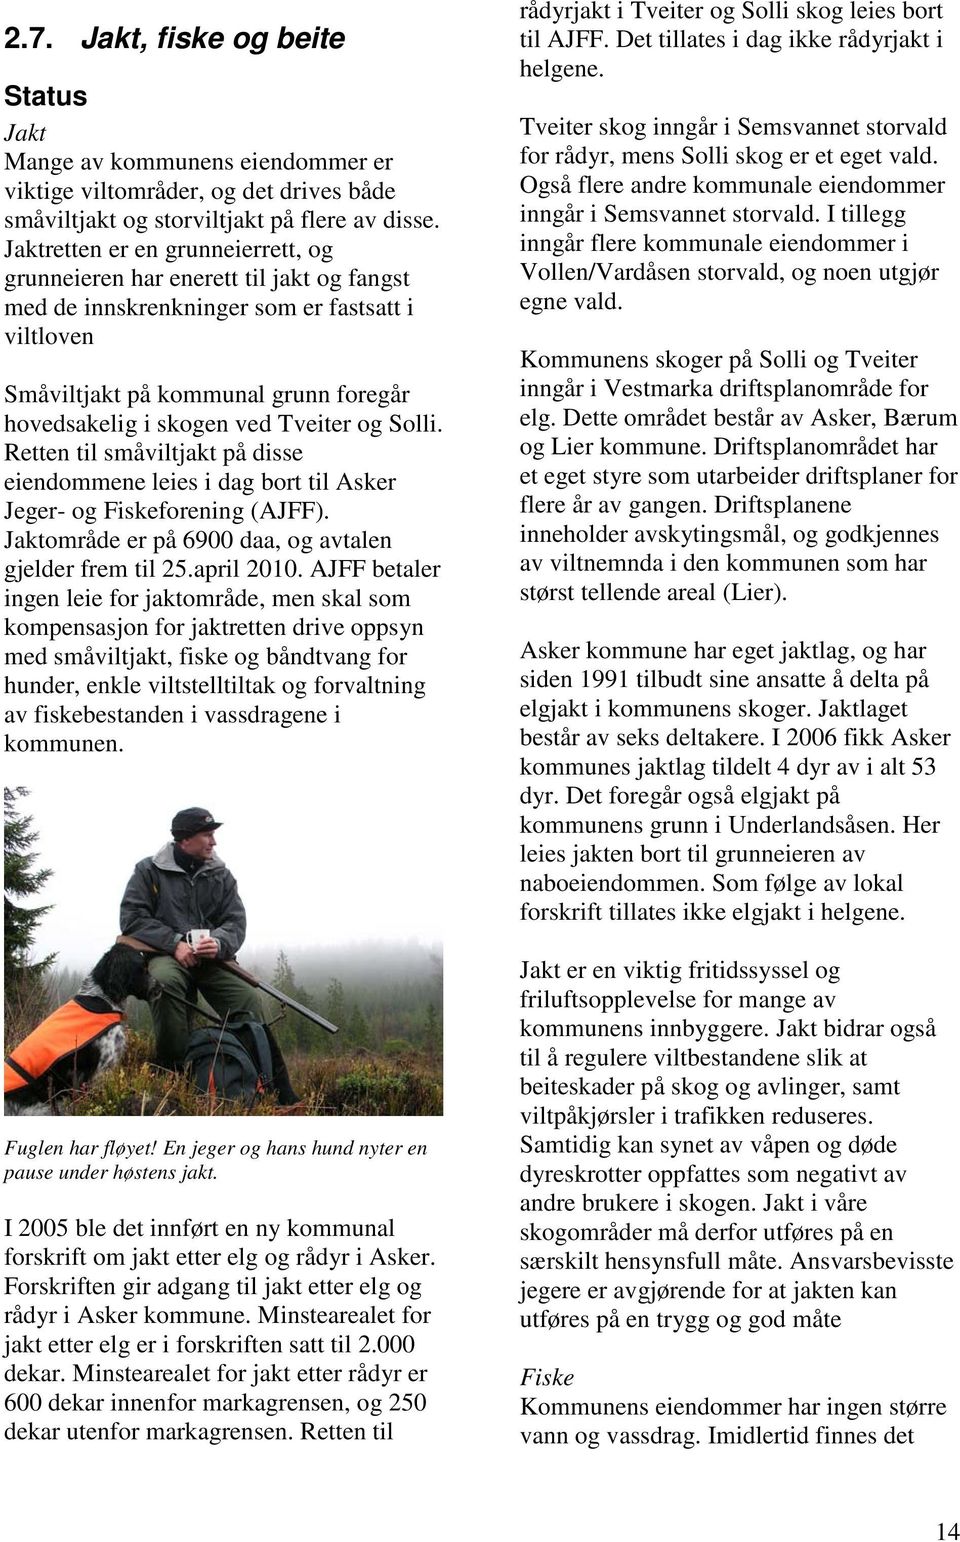 Tveiter og Solli. Retten til småviltjakt på disse eiendommene leies i dag bort til Asker Jeger- og Fiskeforening (AJFF). Jaktområde er på 6900 daa, og avtalen gjelder frem til 25.april 2010.